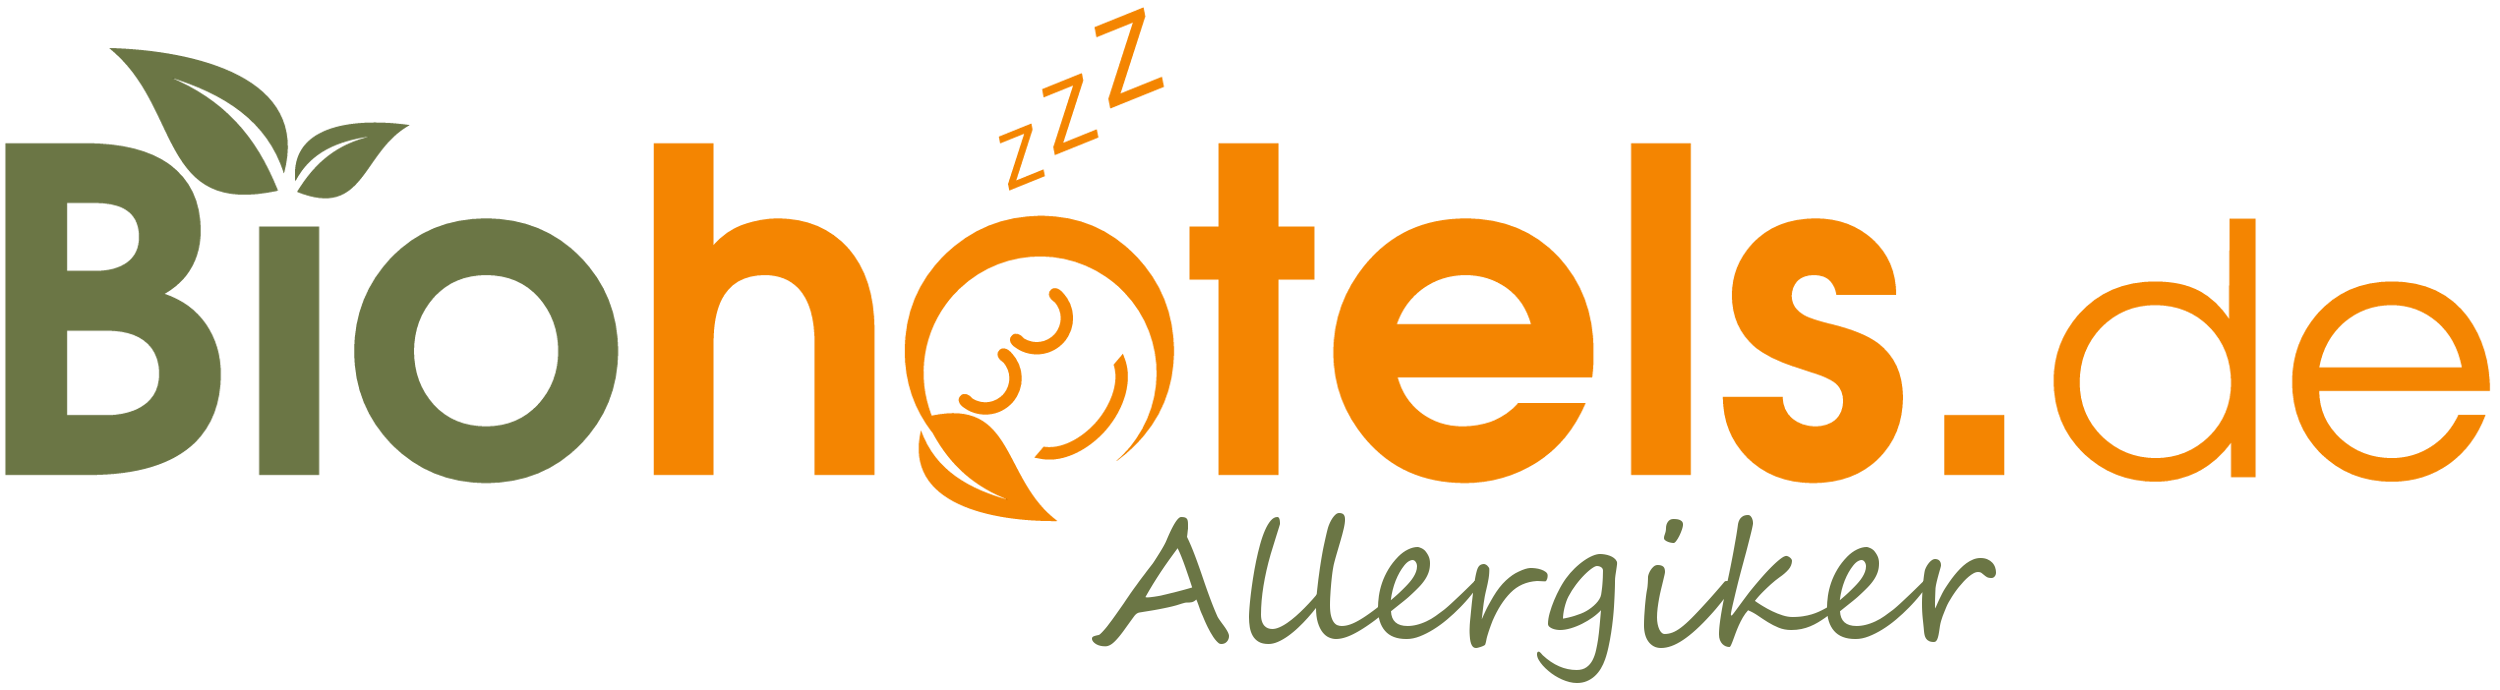 Biohotels für Allergiker